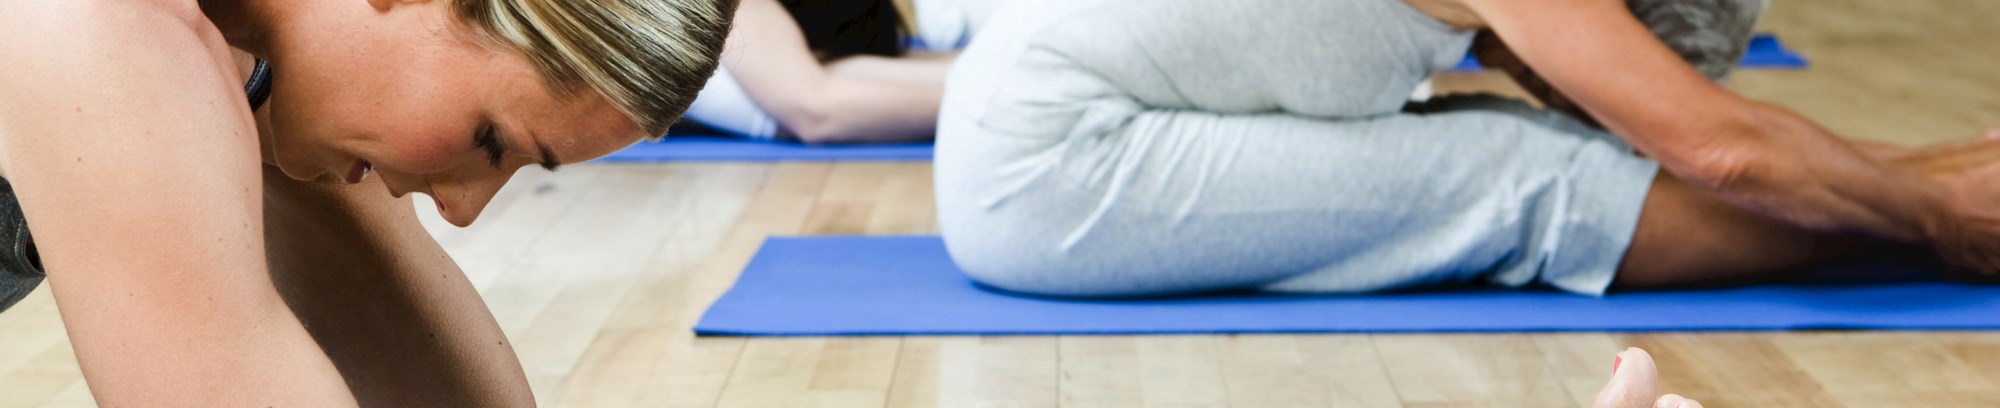 Yoga smidiggør led og muskler styrker kroppen åndedræt